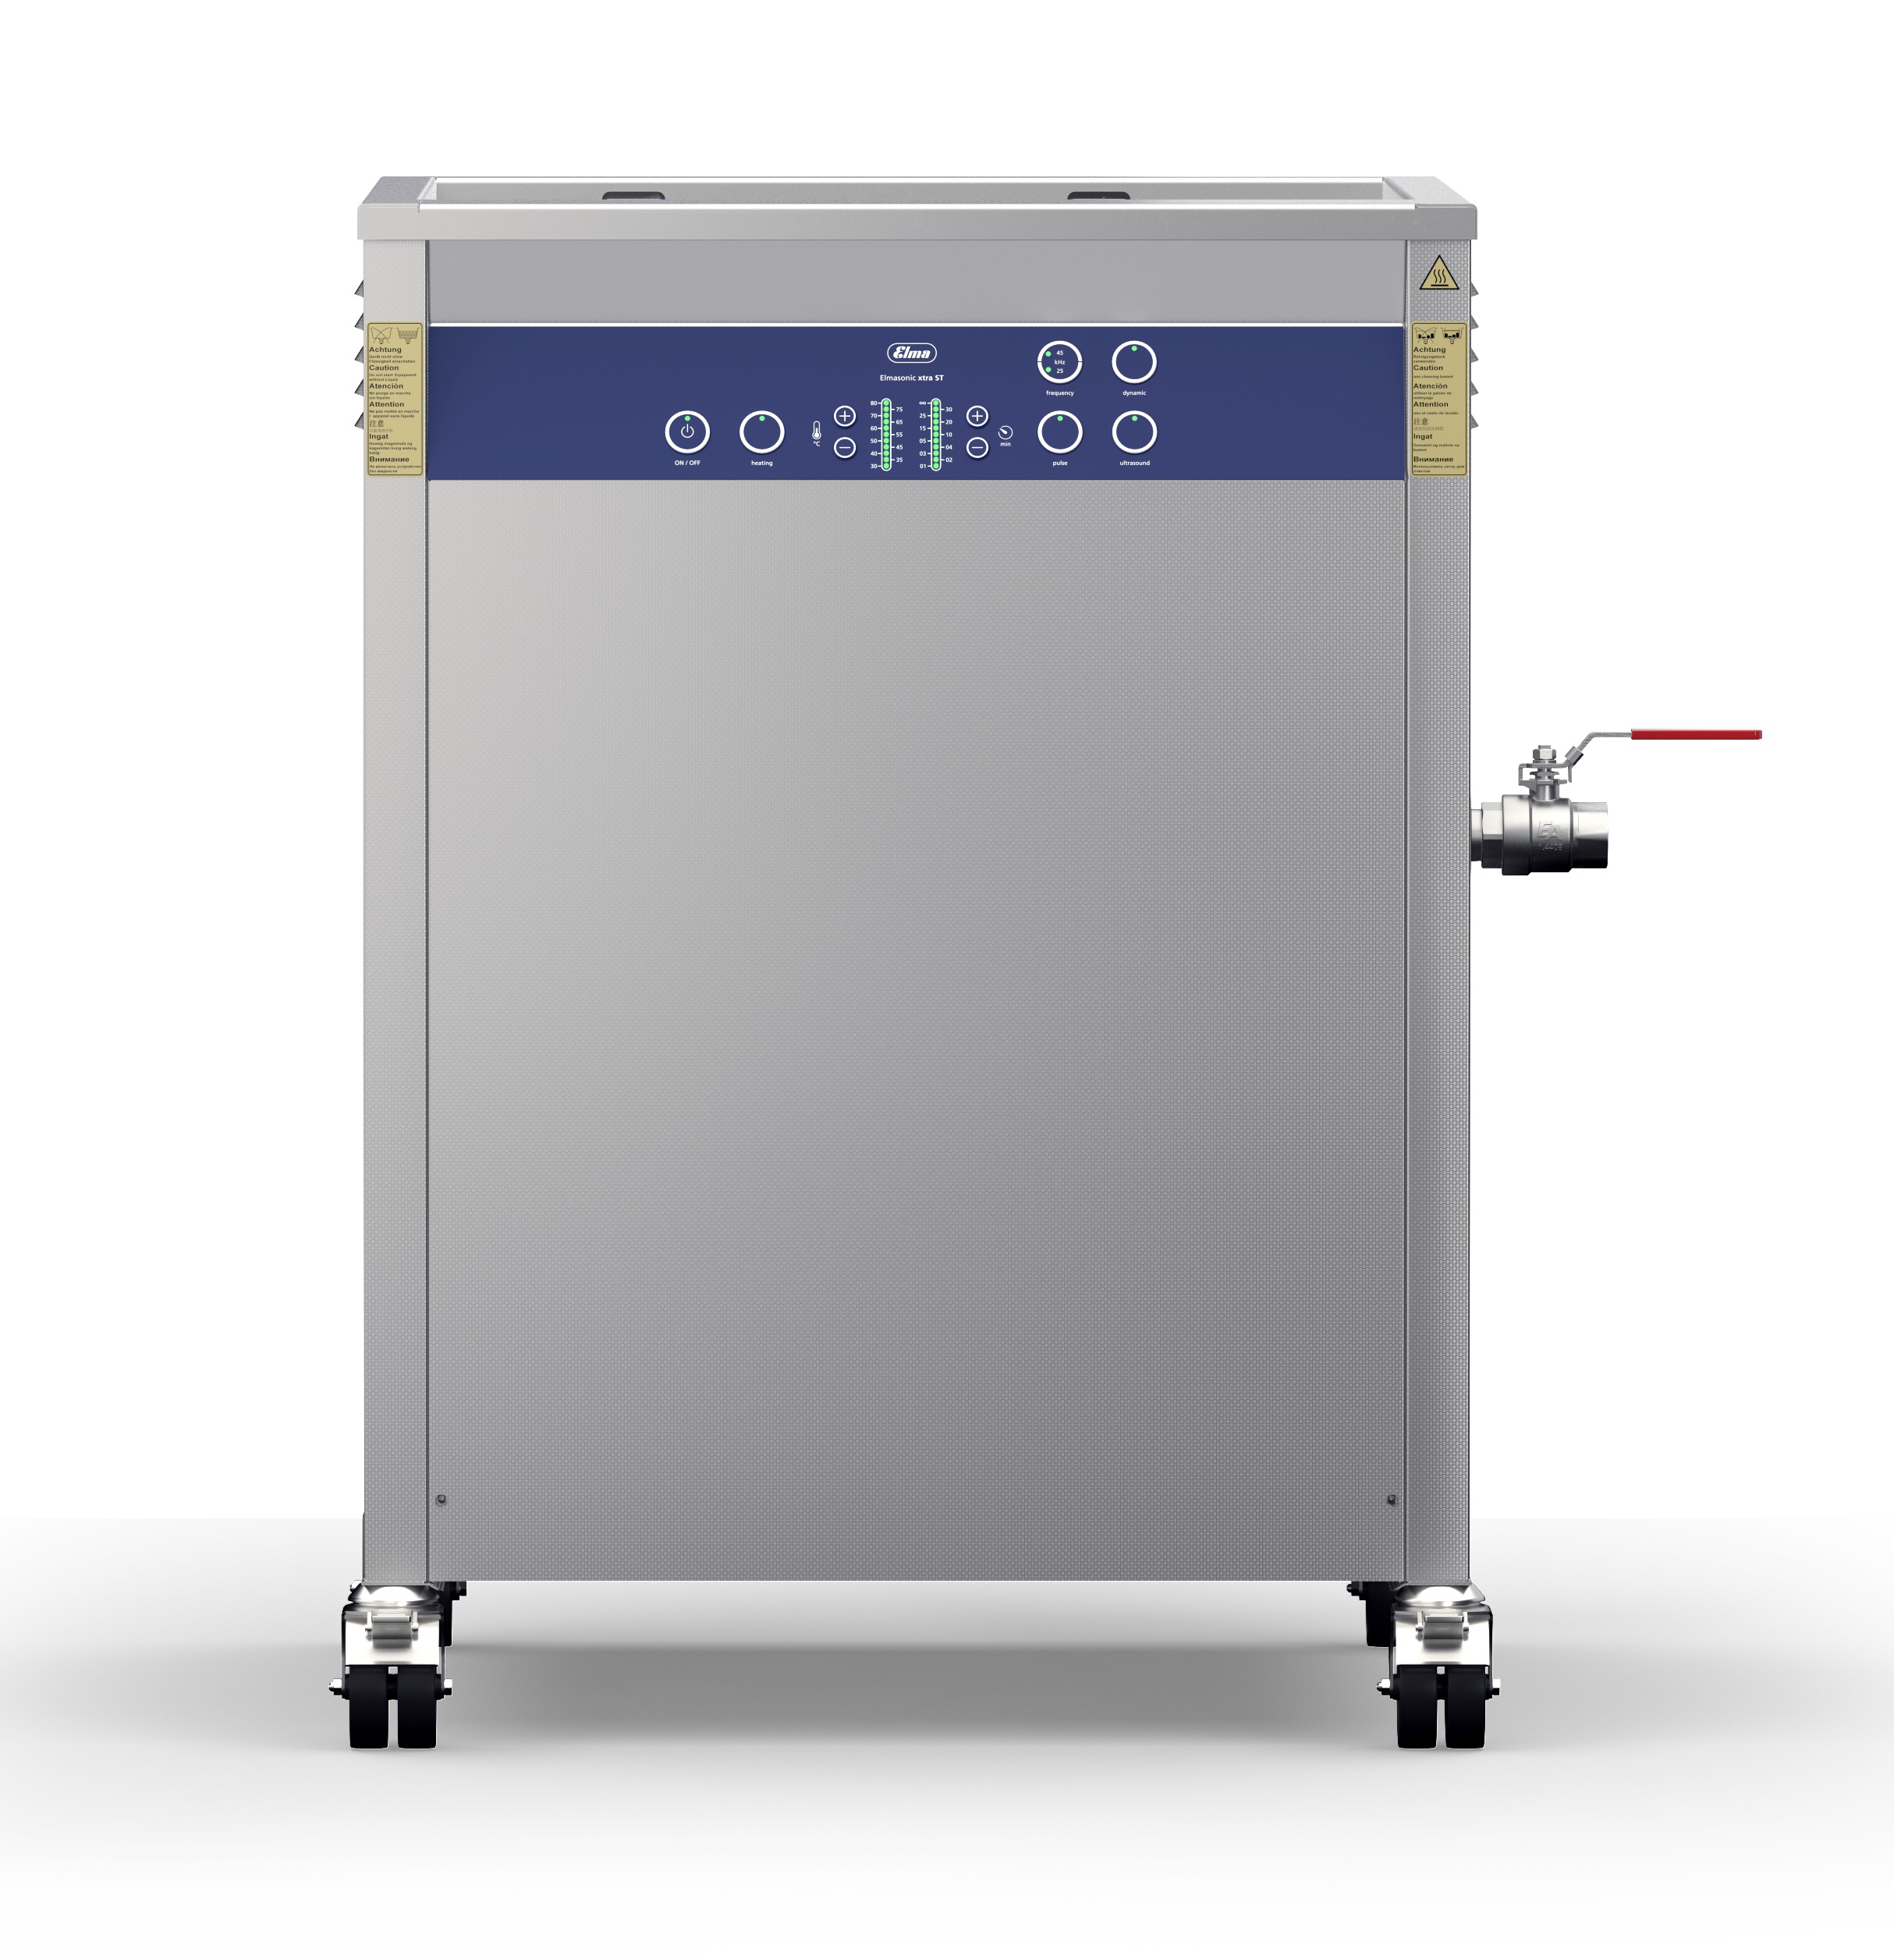 Nettoyage ultrasons - bain ultrasons Elmasonic X-Tra ST 600H